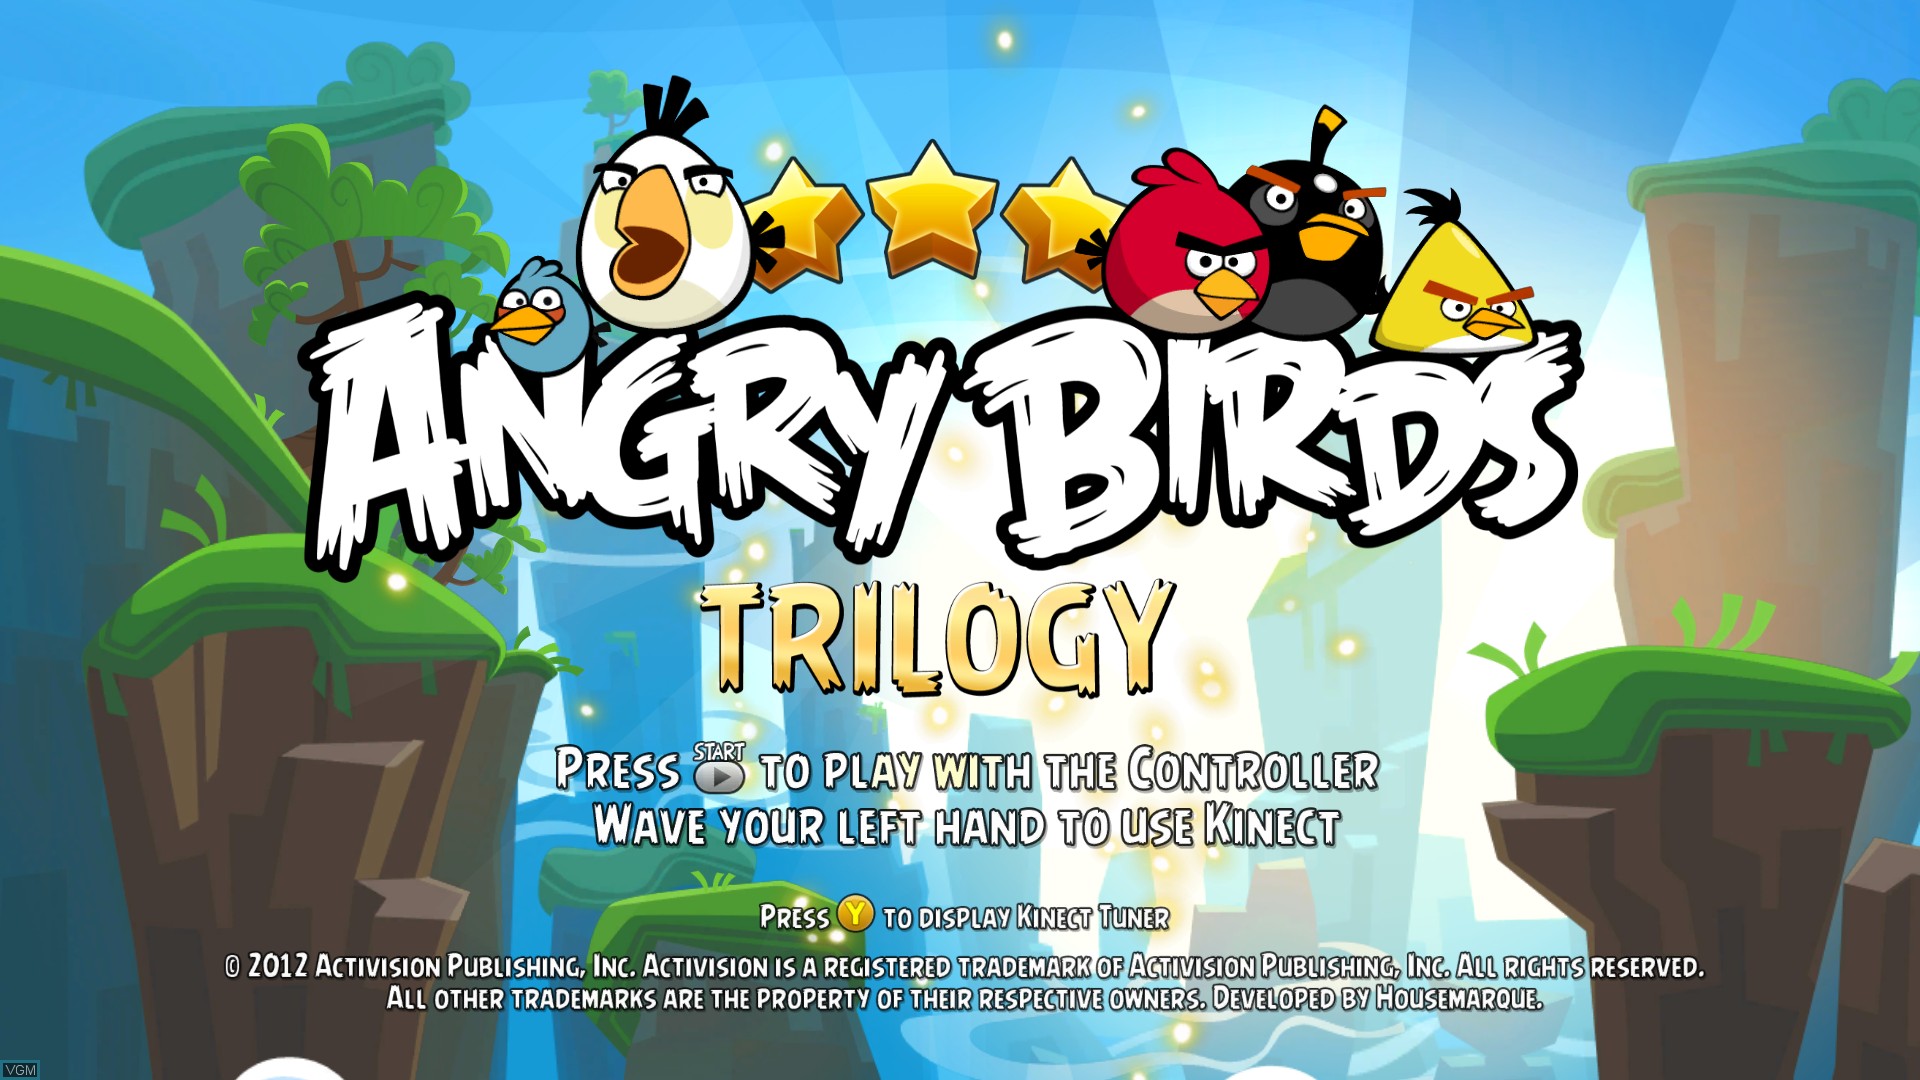 بازی Angry Birds Trilogy برای XBOX 360